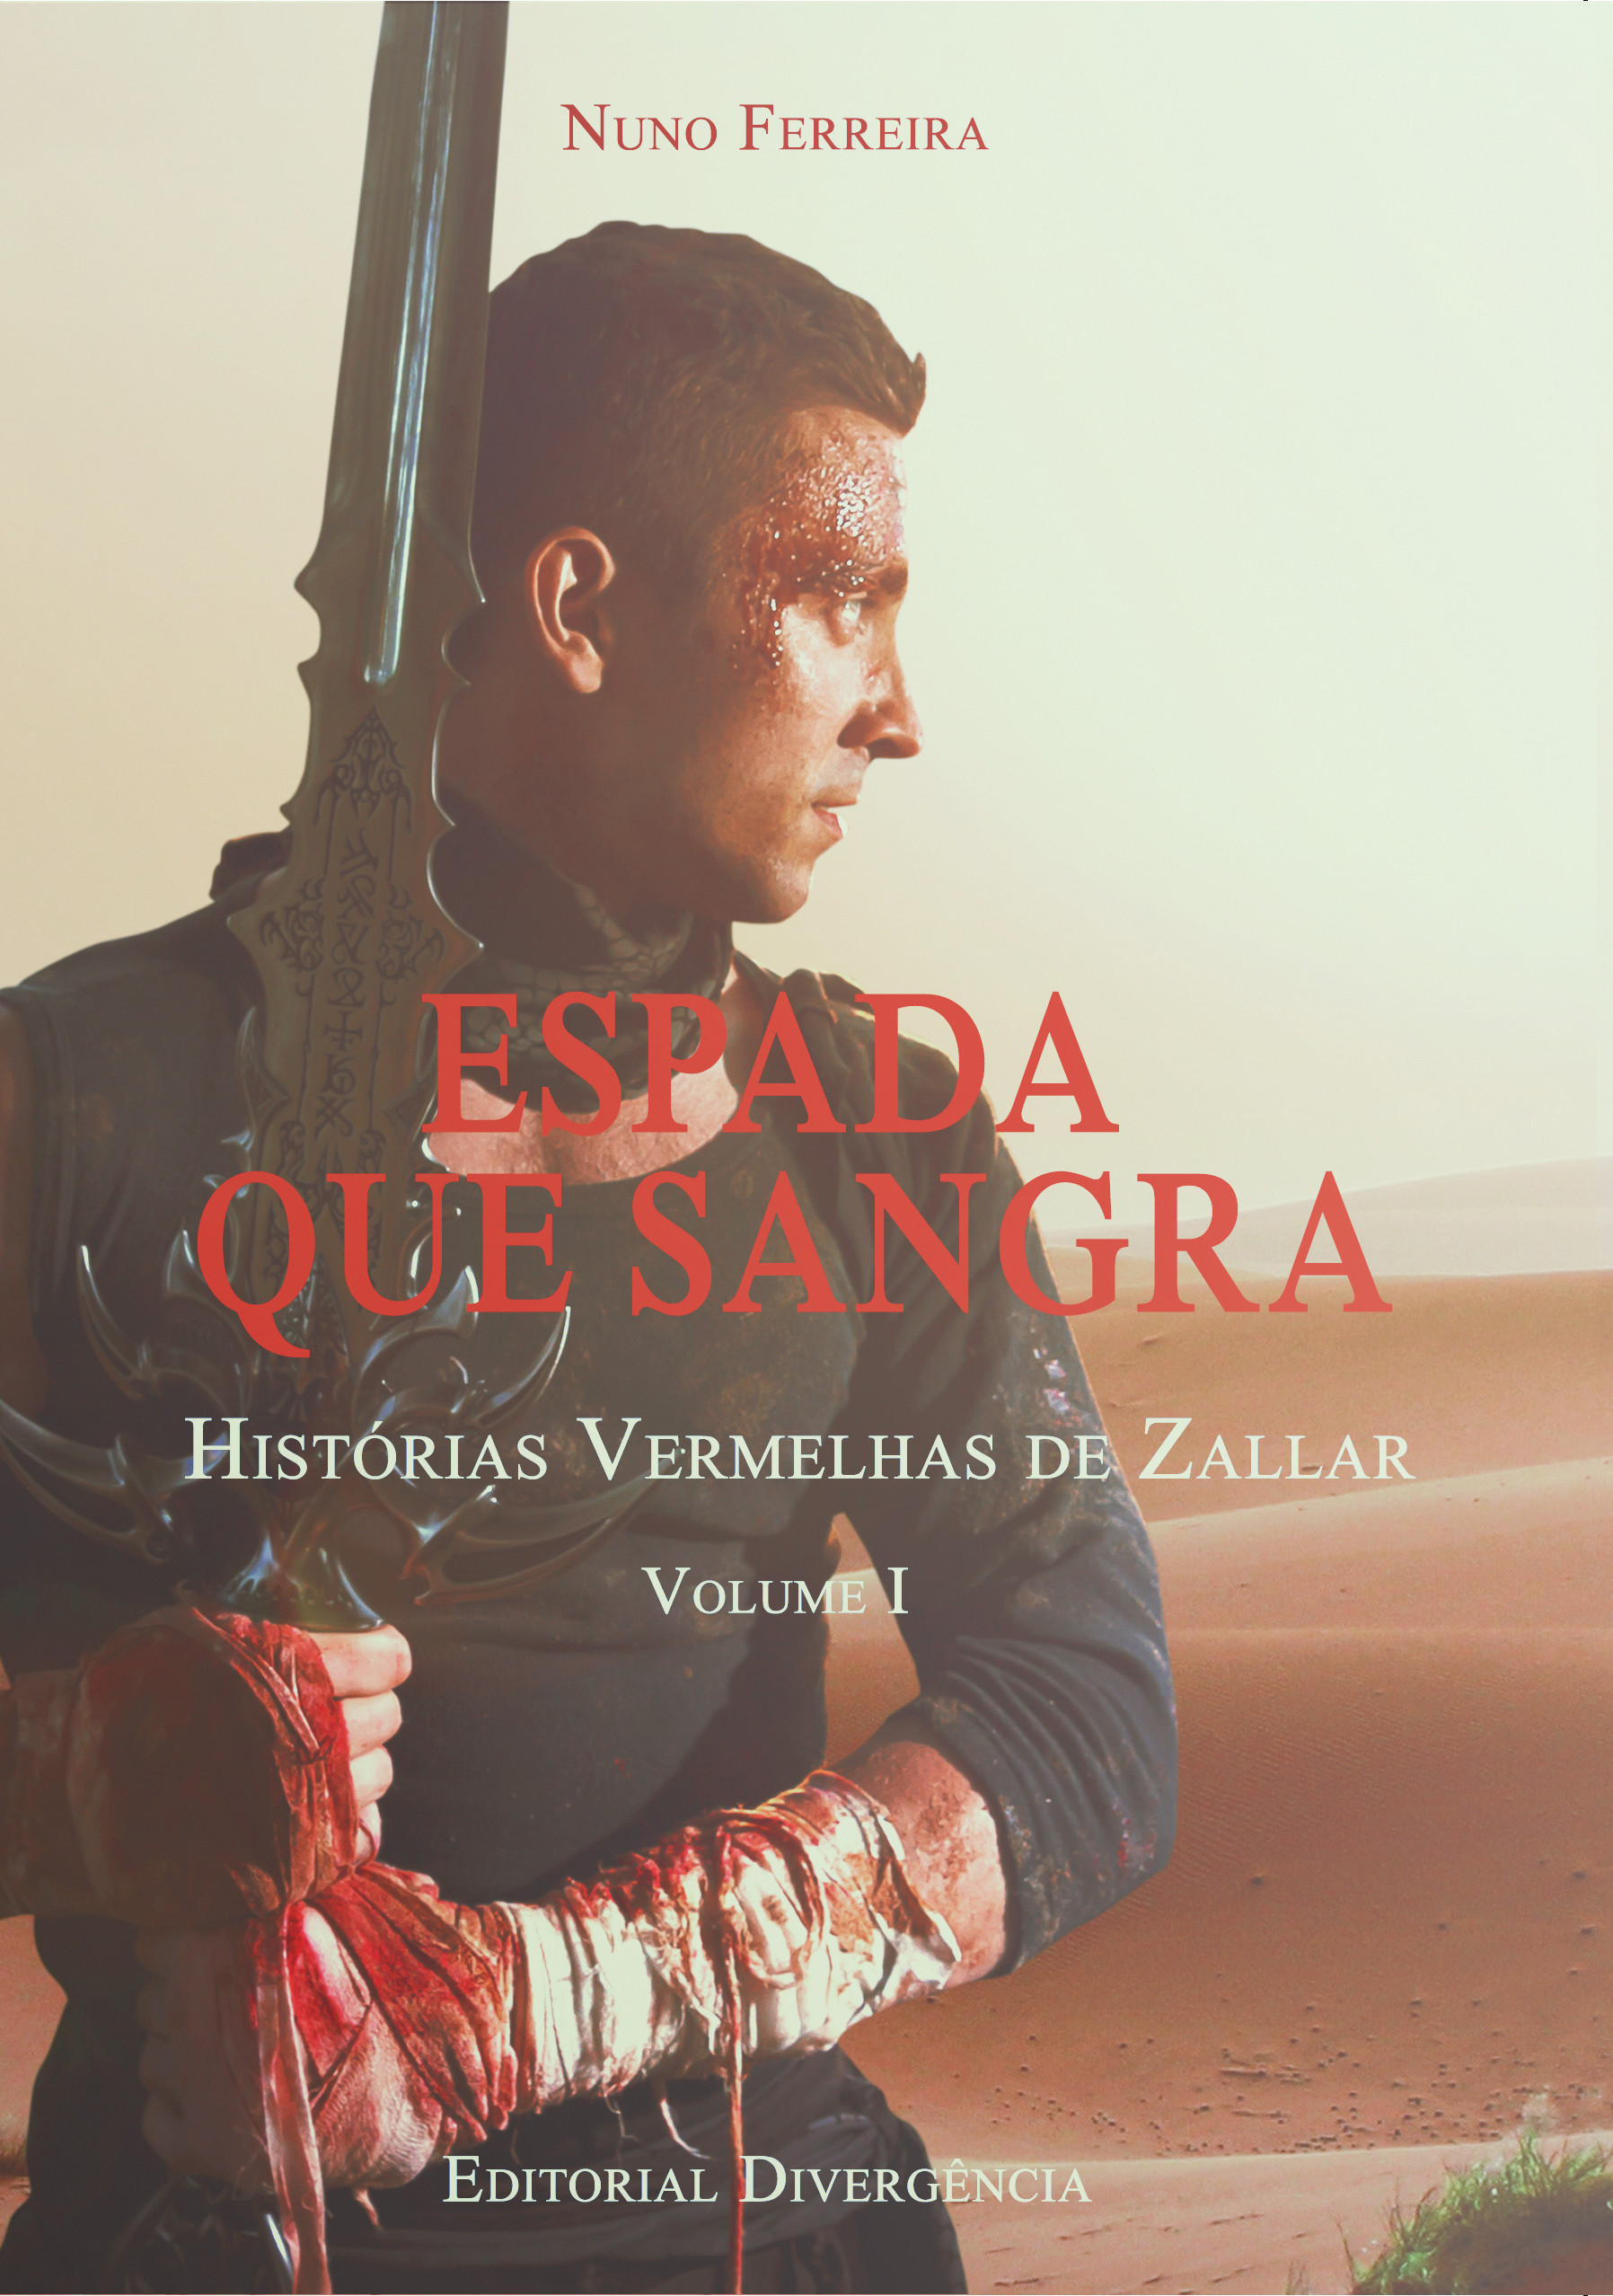 [COVER REVEAL] Espada Que Sangra, de Nuno Ferreira